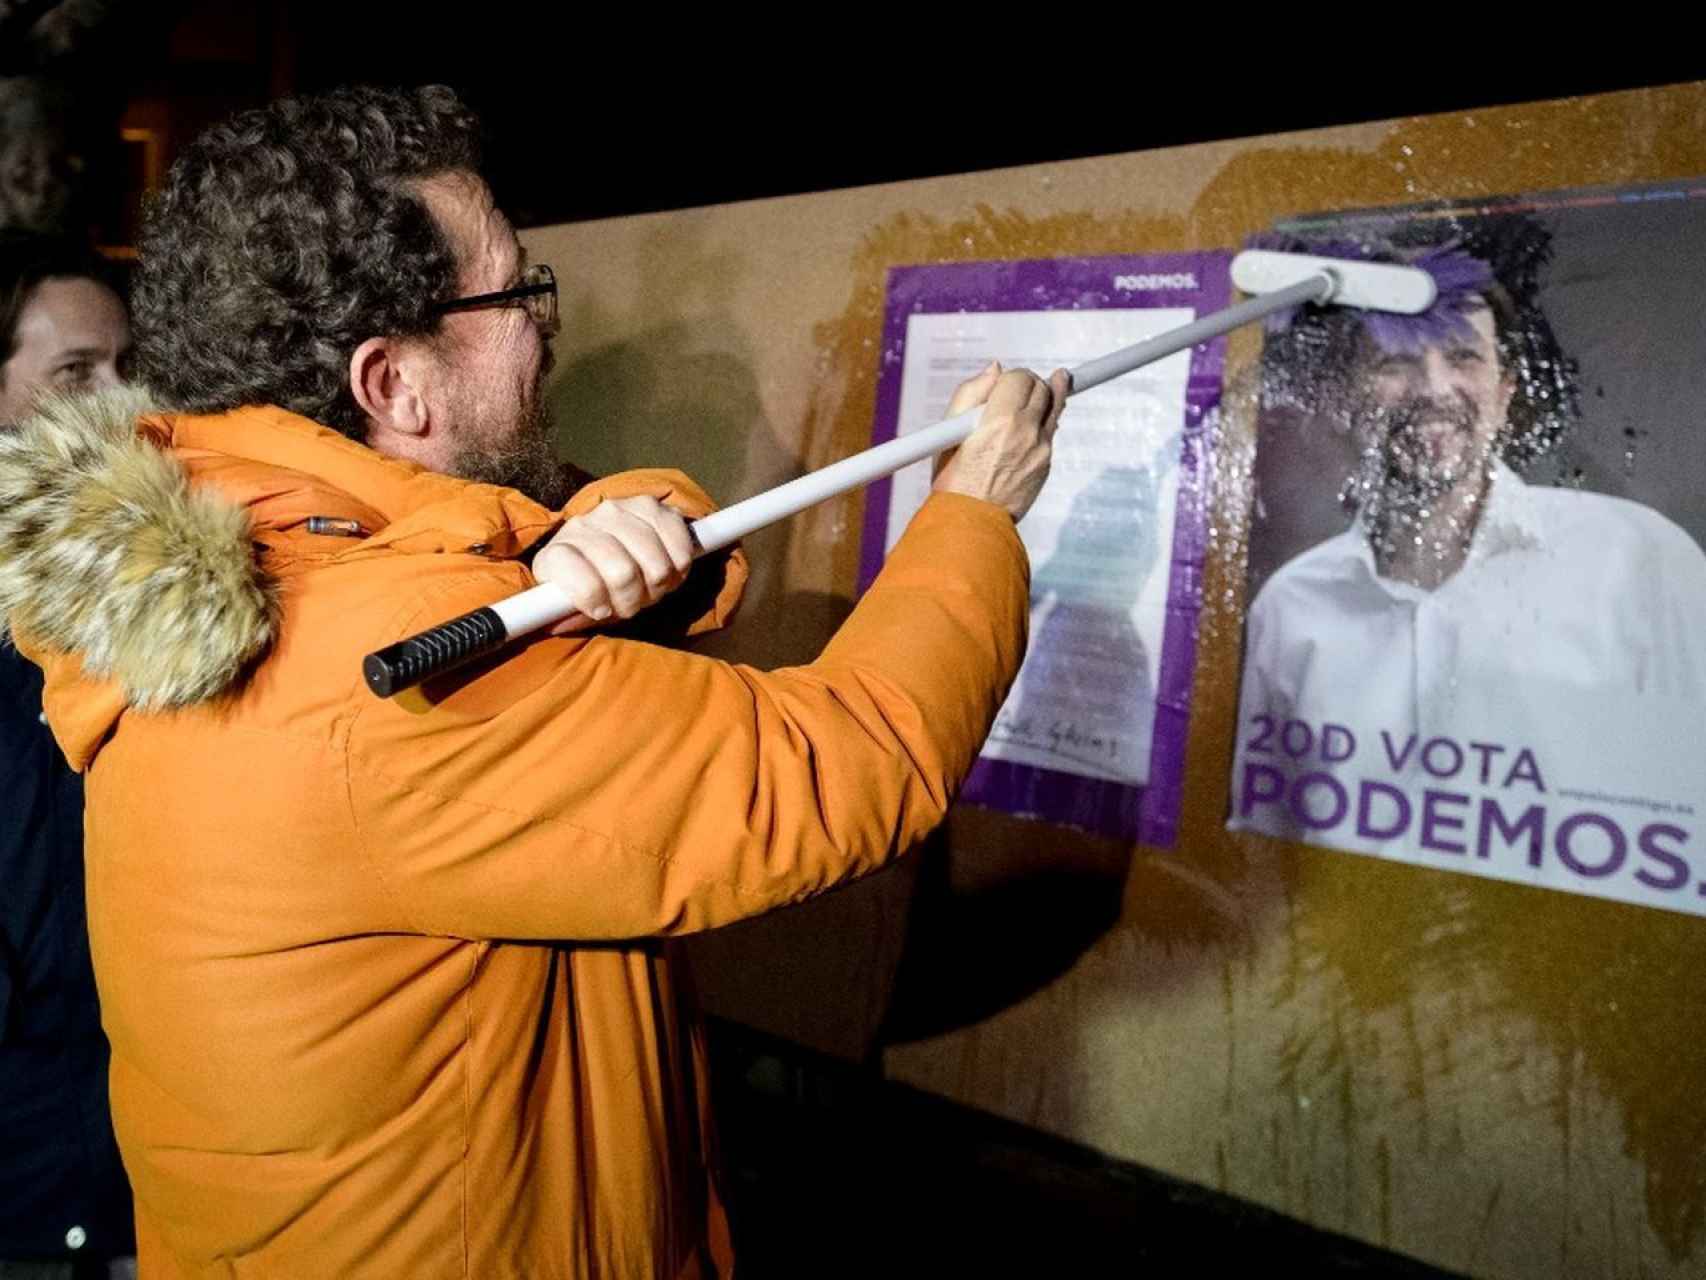 El padre de Pablo Iglesias pegando el cartel de Podemos en Zamora